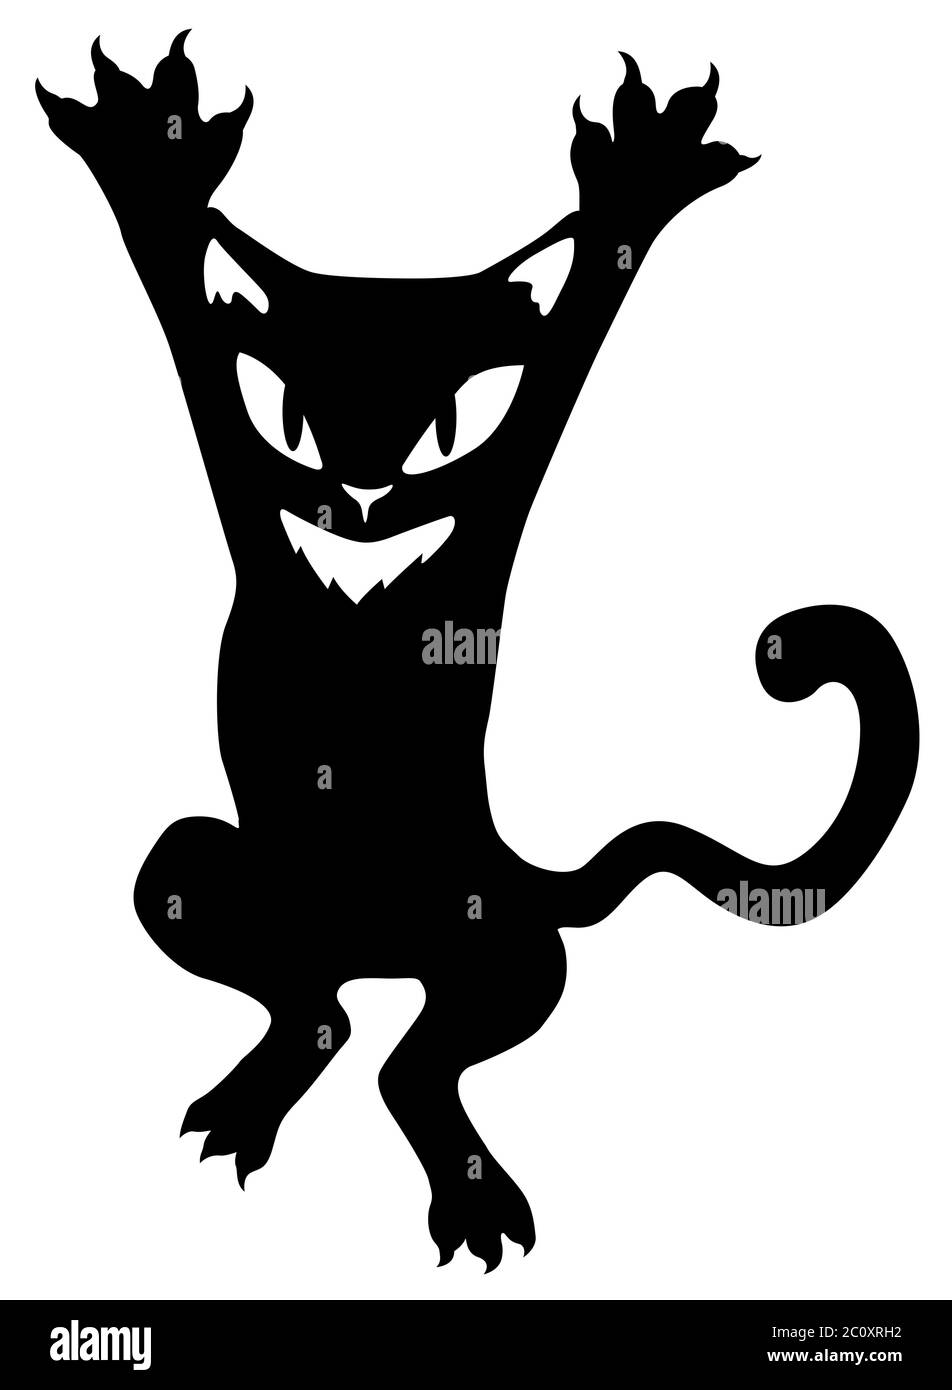 Le personnage de dessin animé de chat s'accroc aux bras rehaussé pochoir noir, illustration vectorielle, vertical, isolé Illustration de Vecteur